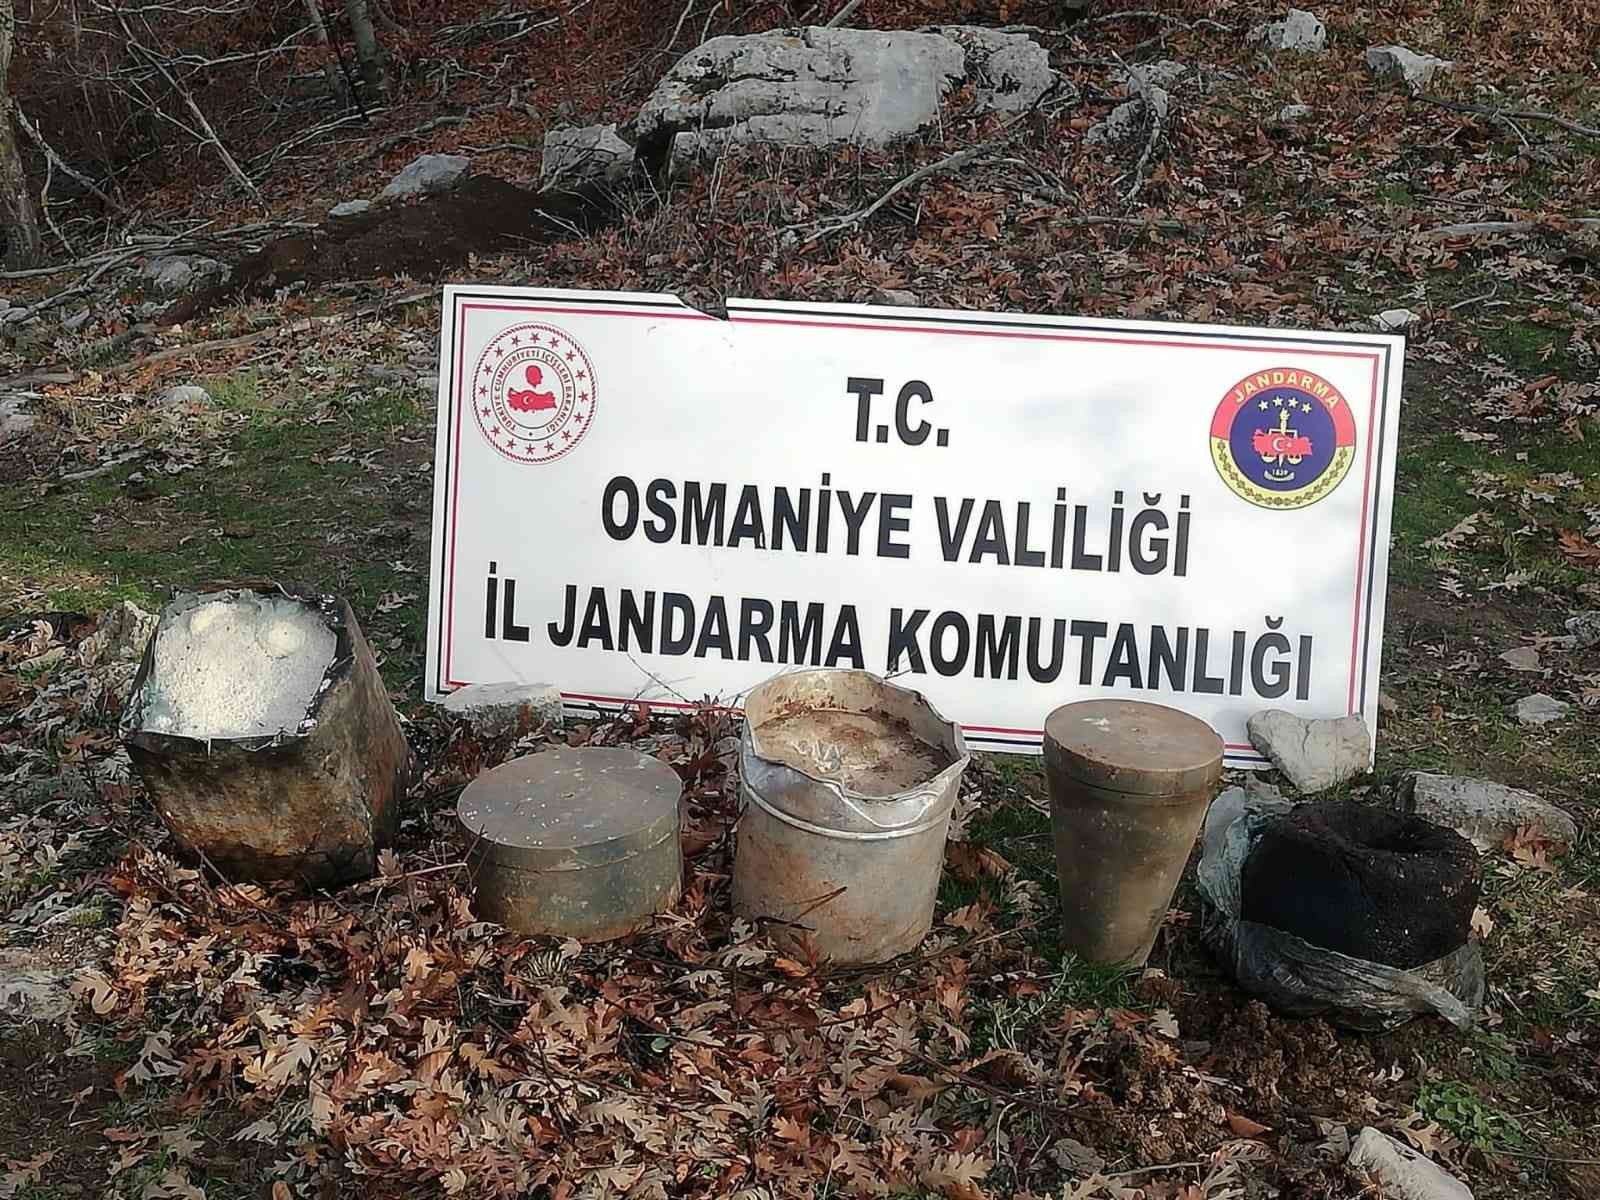 Amanoslarda 180 kilogram patlayıcı ele geçirildi #osmaniye